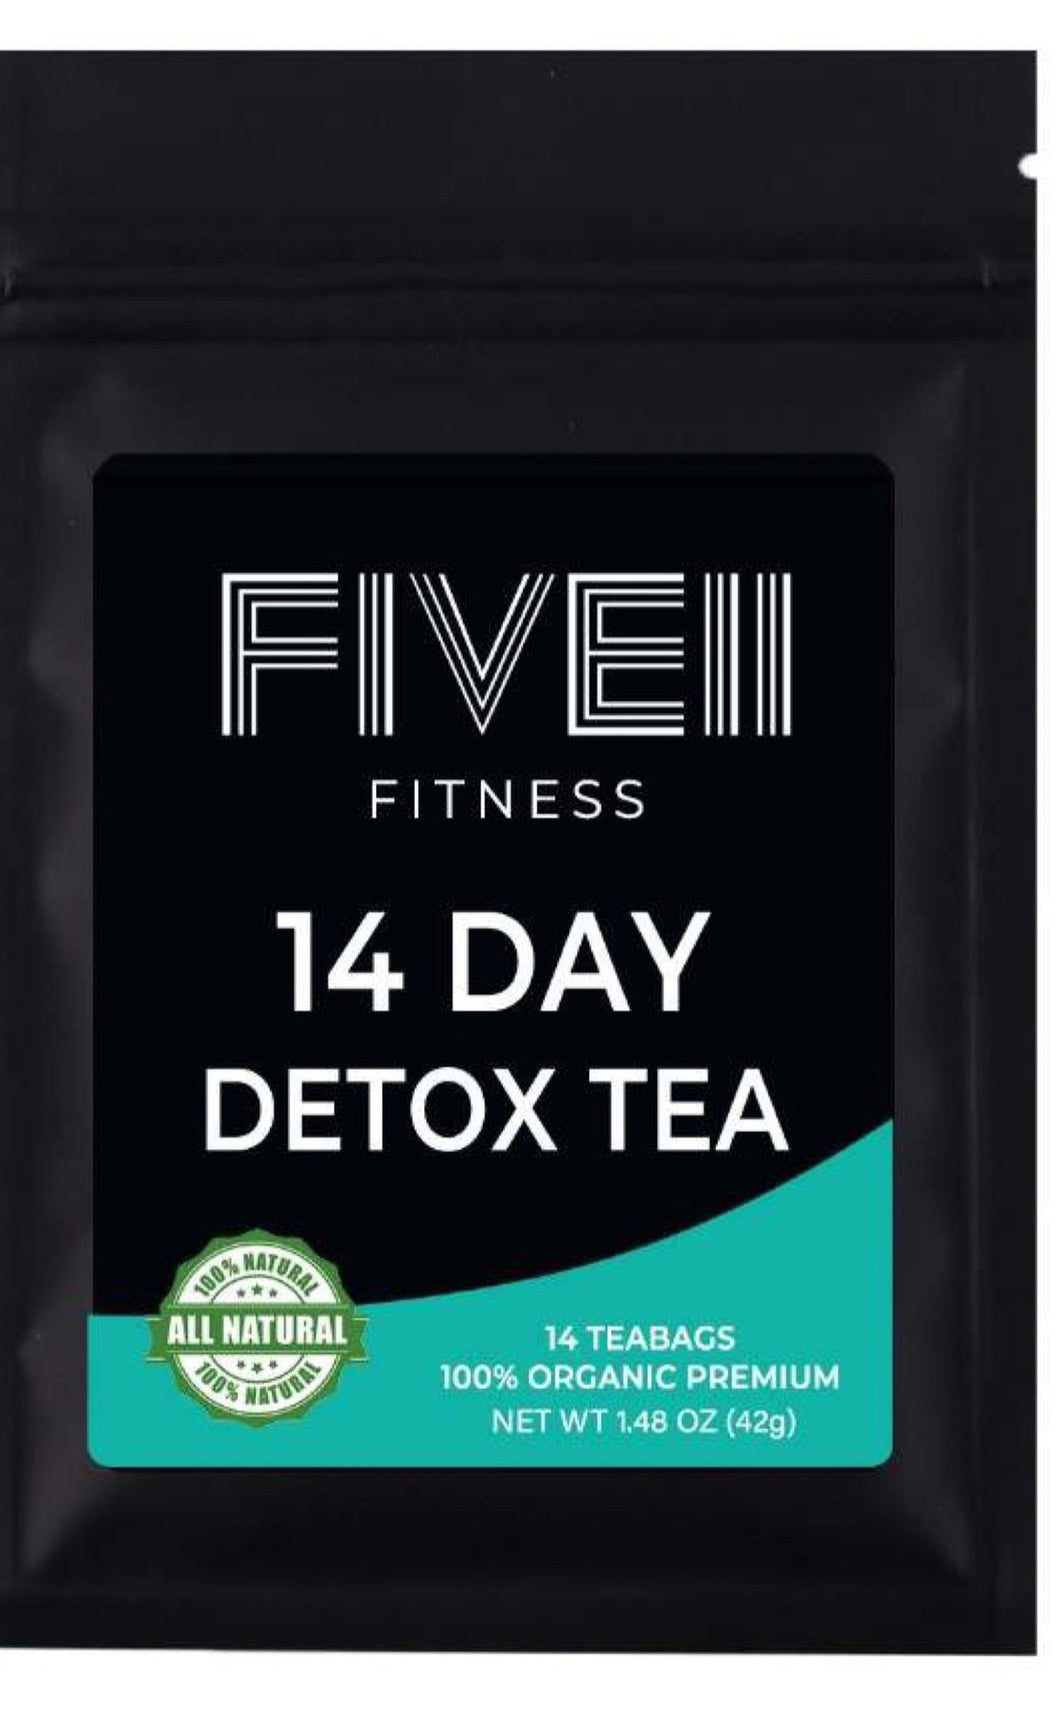 Five11 Fitness Detox Tea